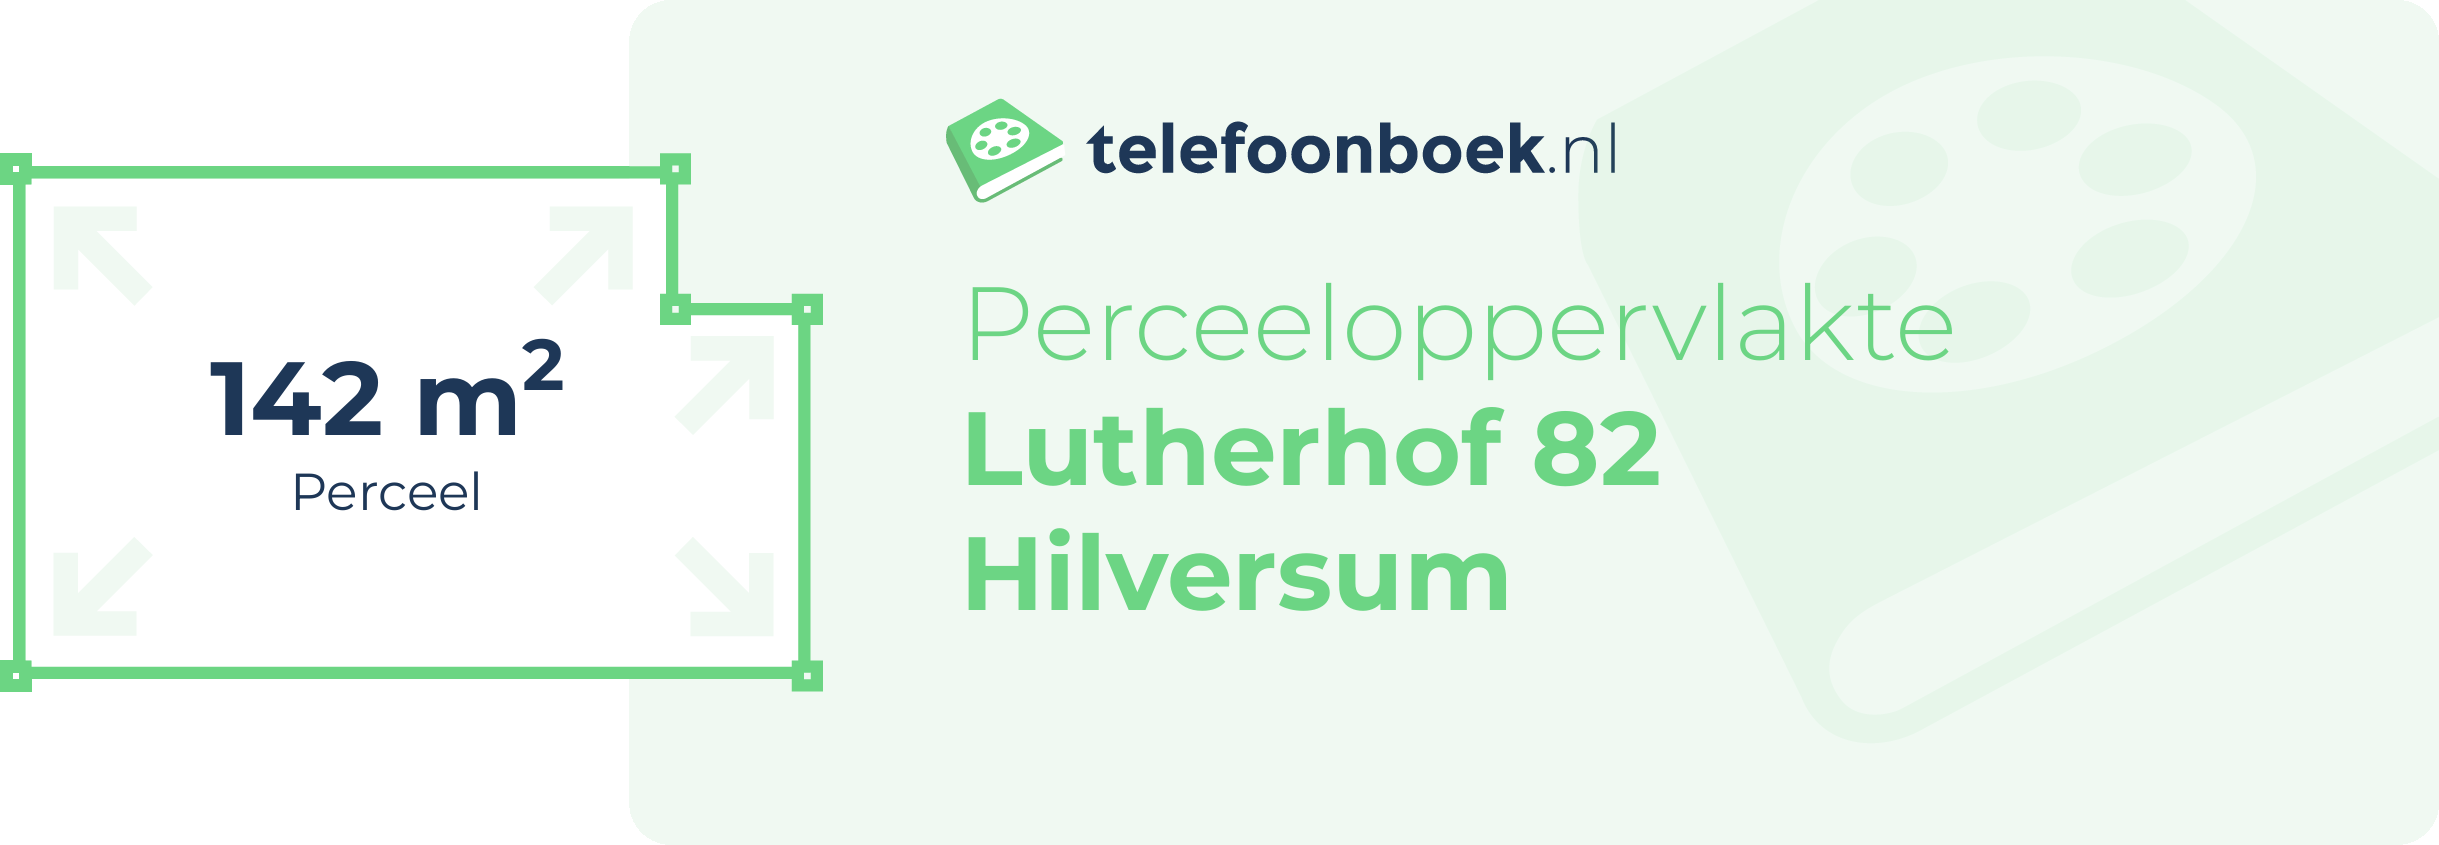 Perceeloppervlakte Lutherhof 82 Hilversum